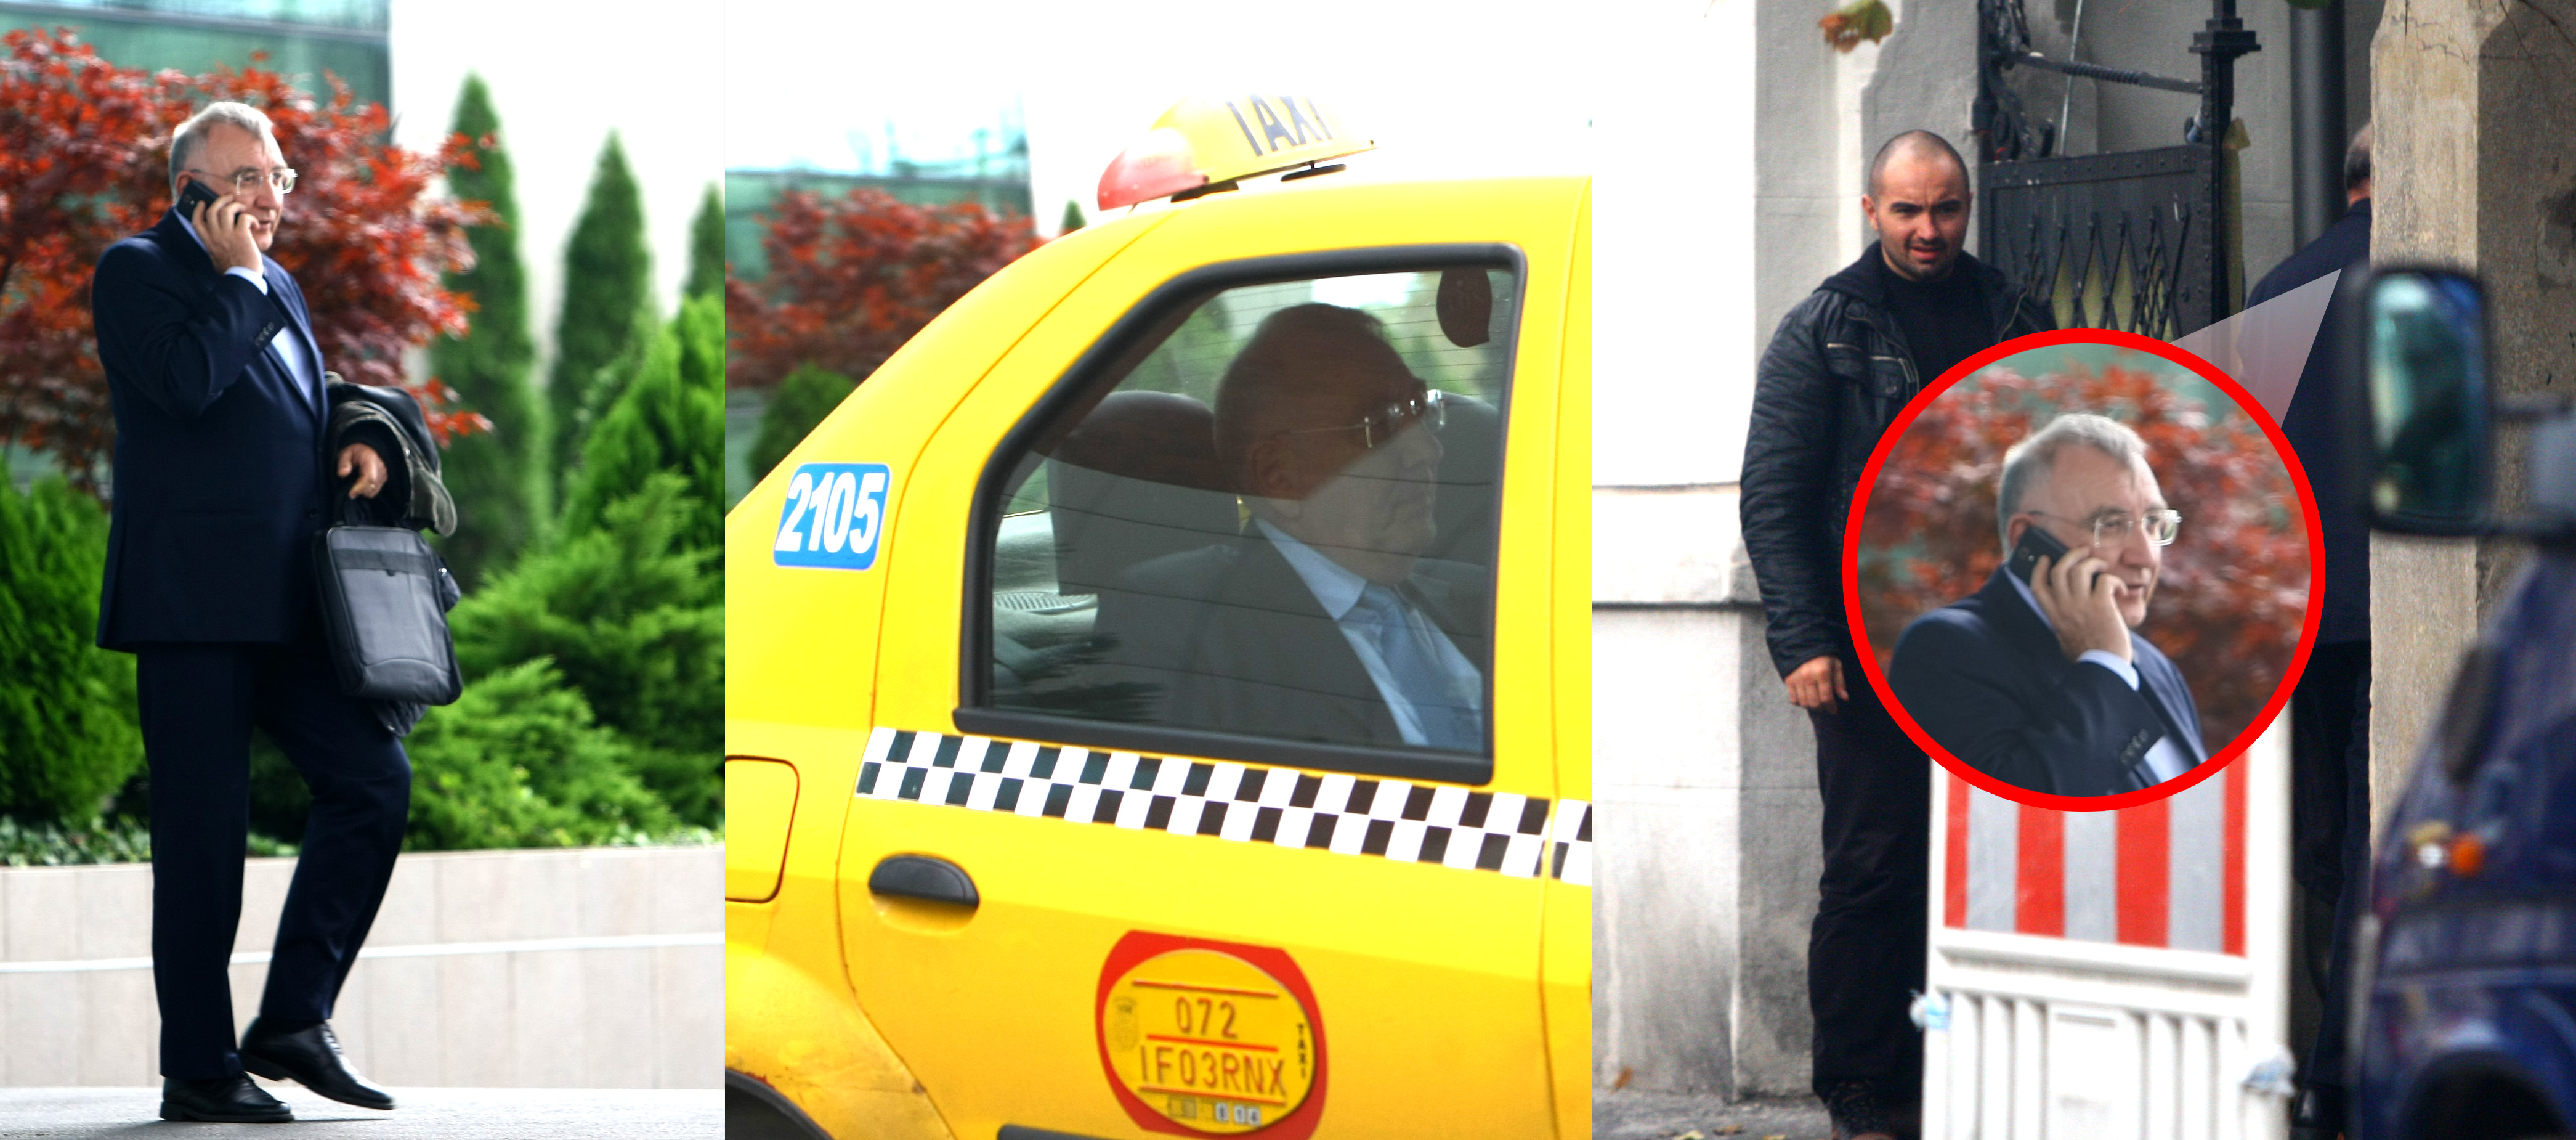 Primarul Andrei Chiliman a plecat de la Adunare cu taxiul, iar cand a ajuns la destinatie a fost intampinat de un bodyguard musculos